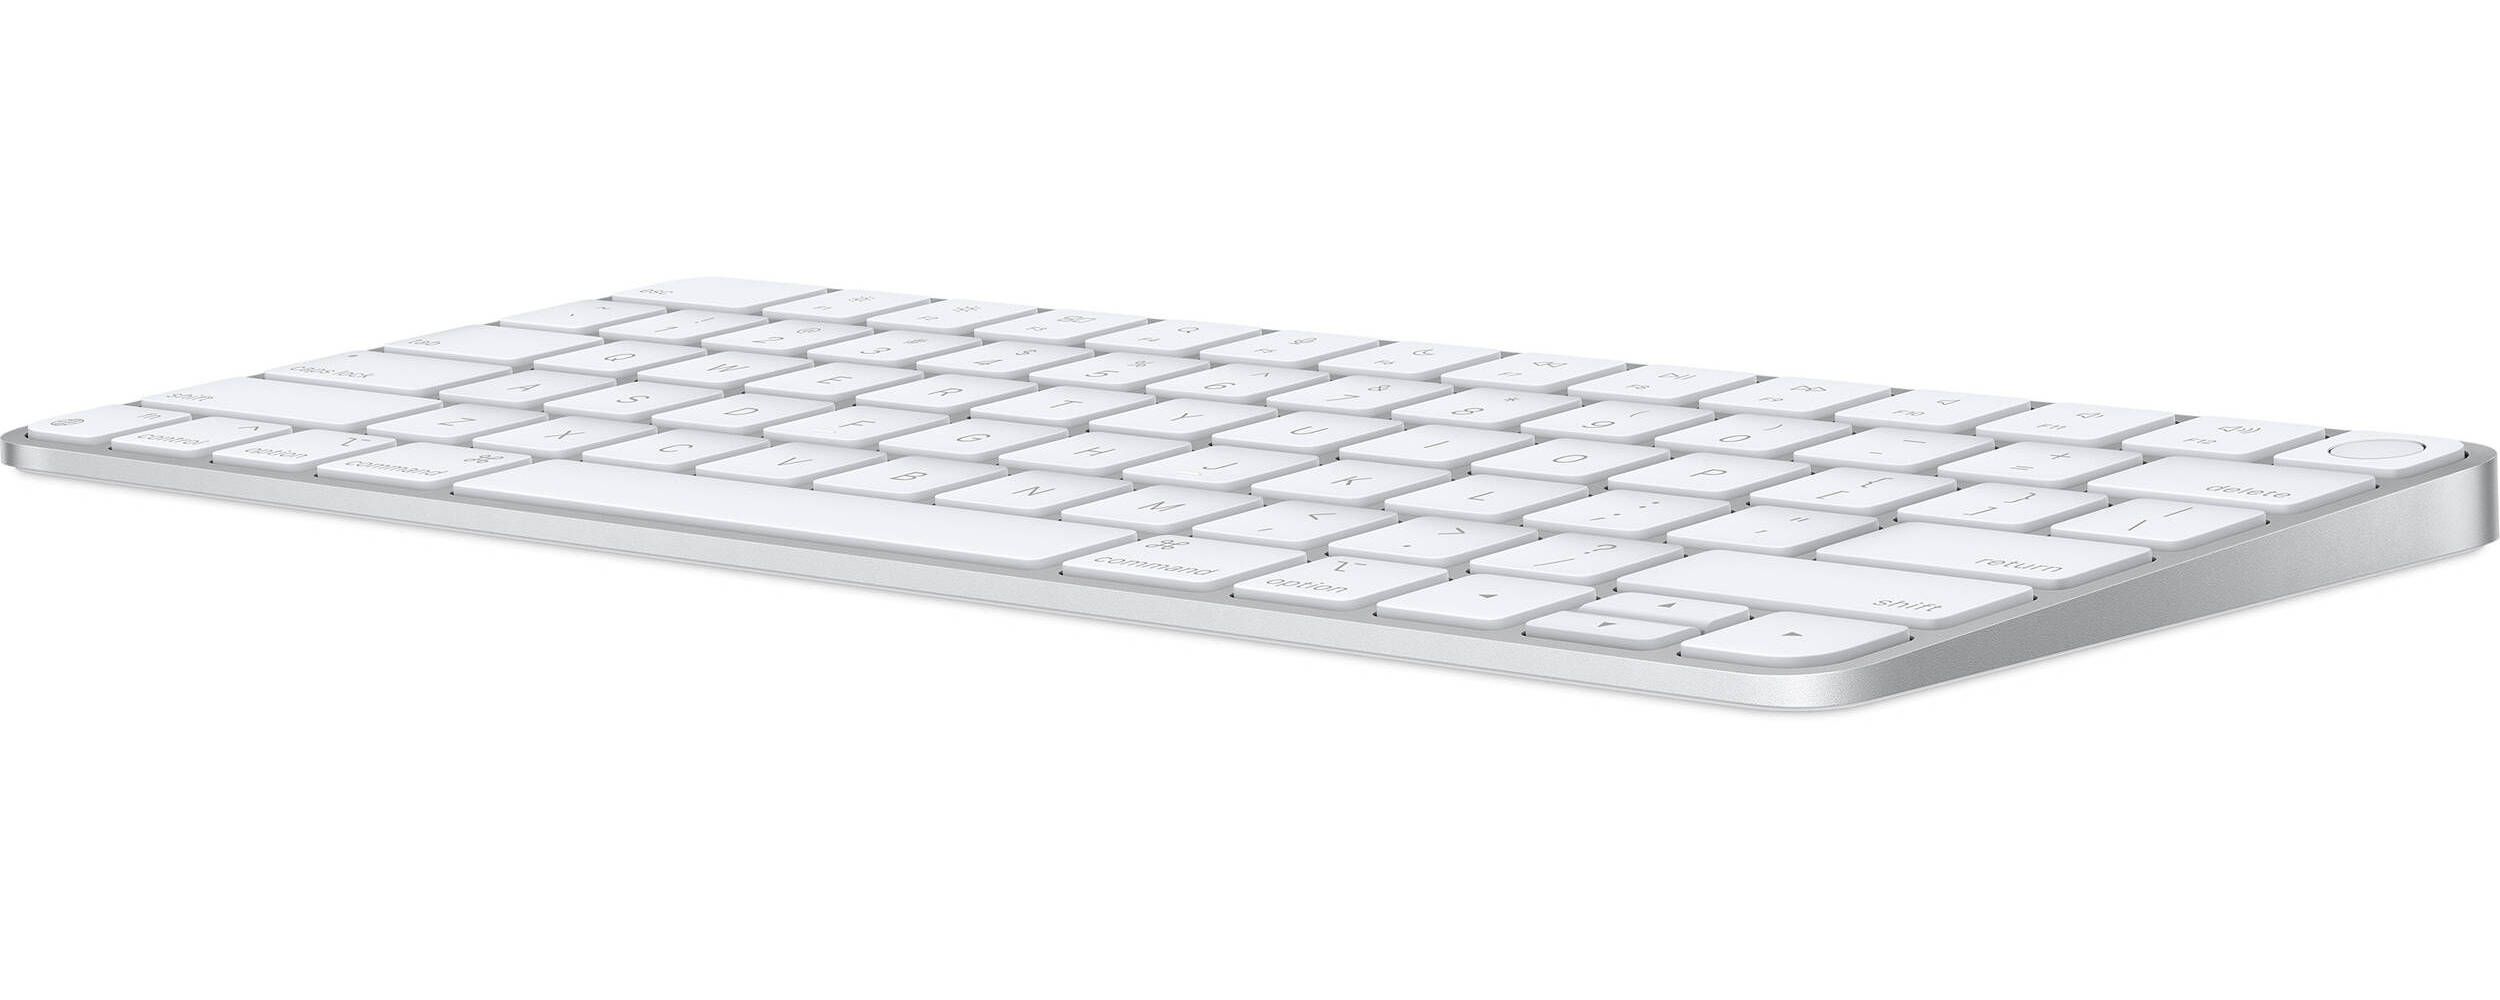 Клавиатура Apple Magic Keyboard с Touch ID, серебристый+белый— фото №1